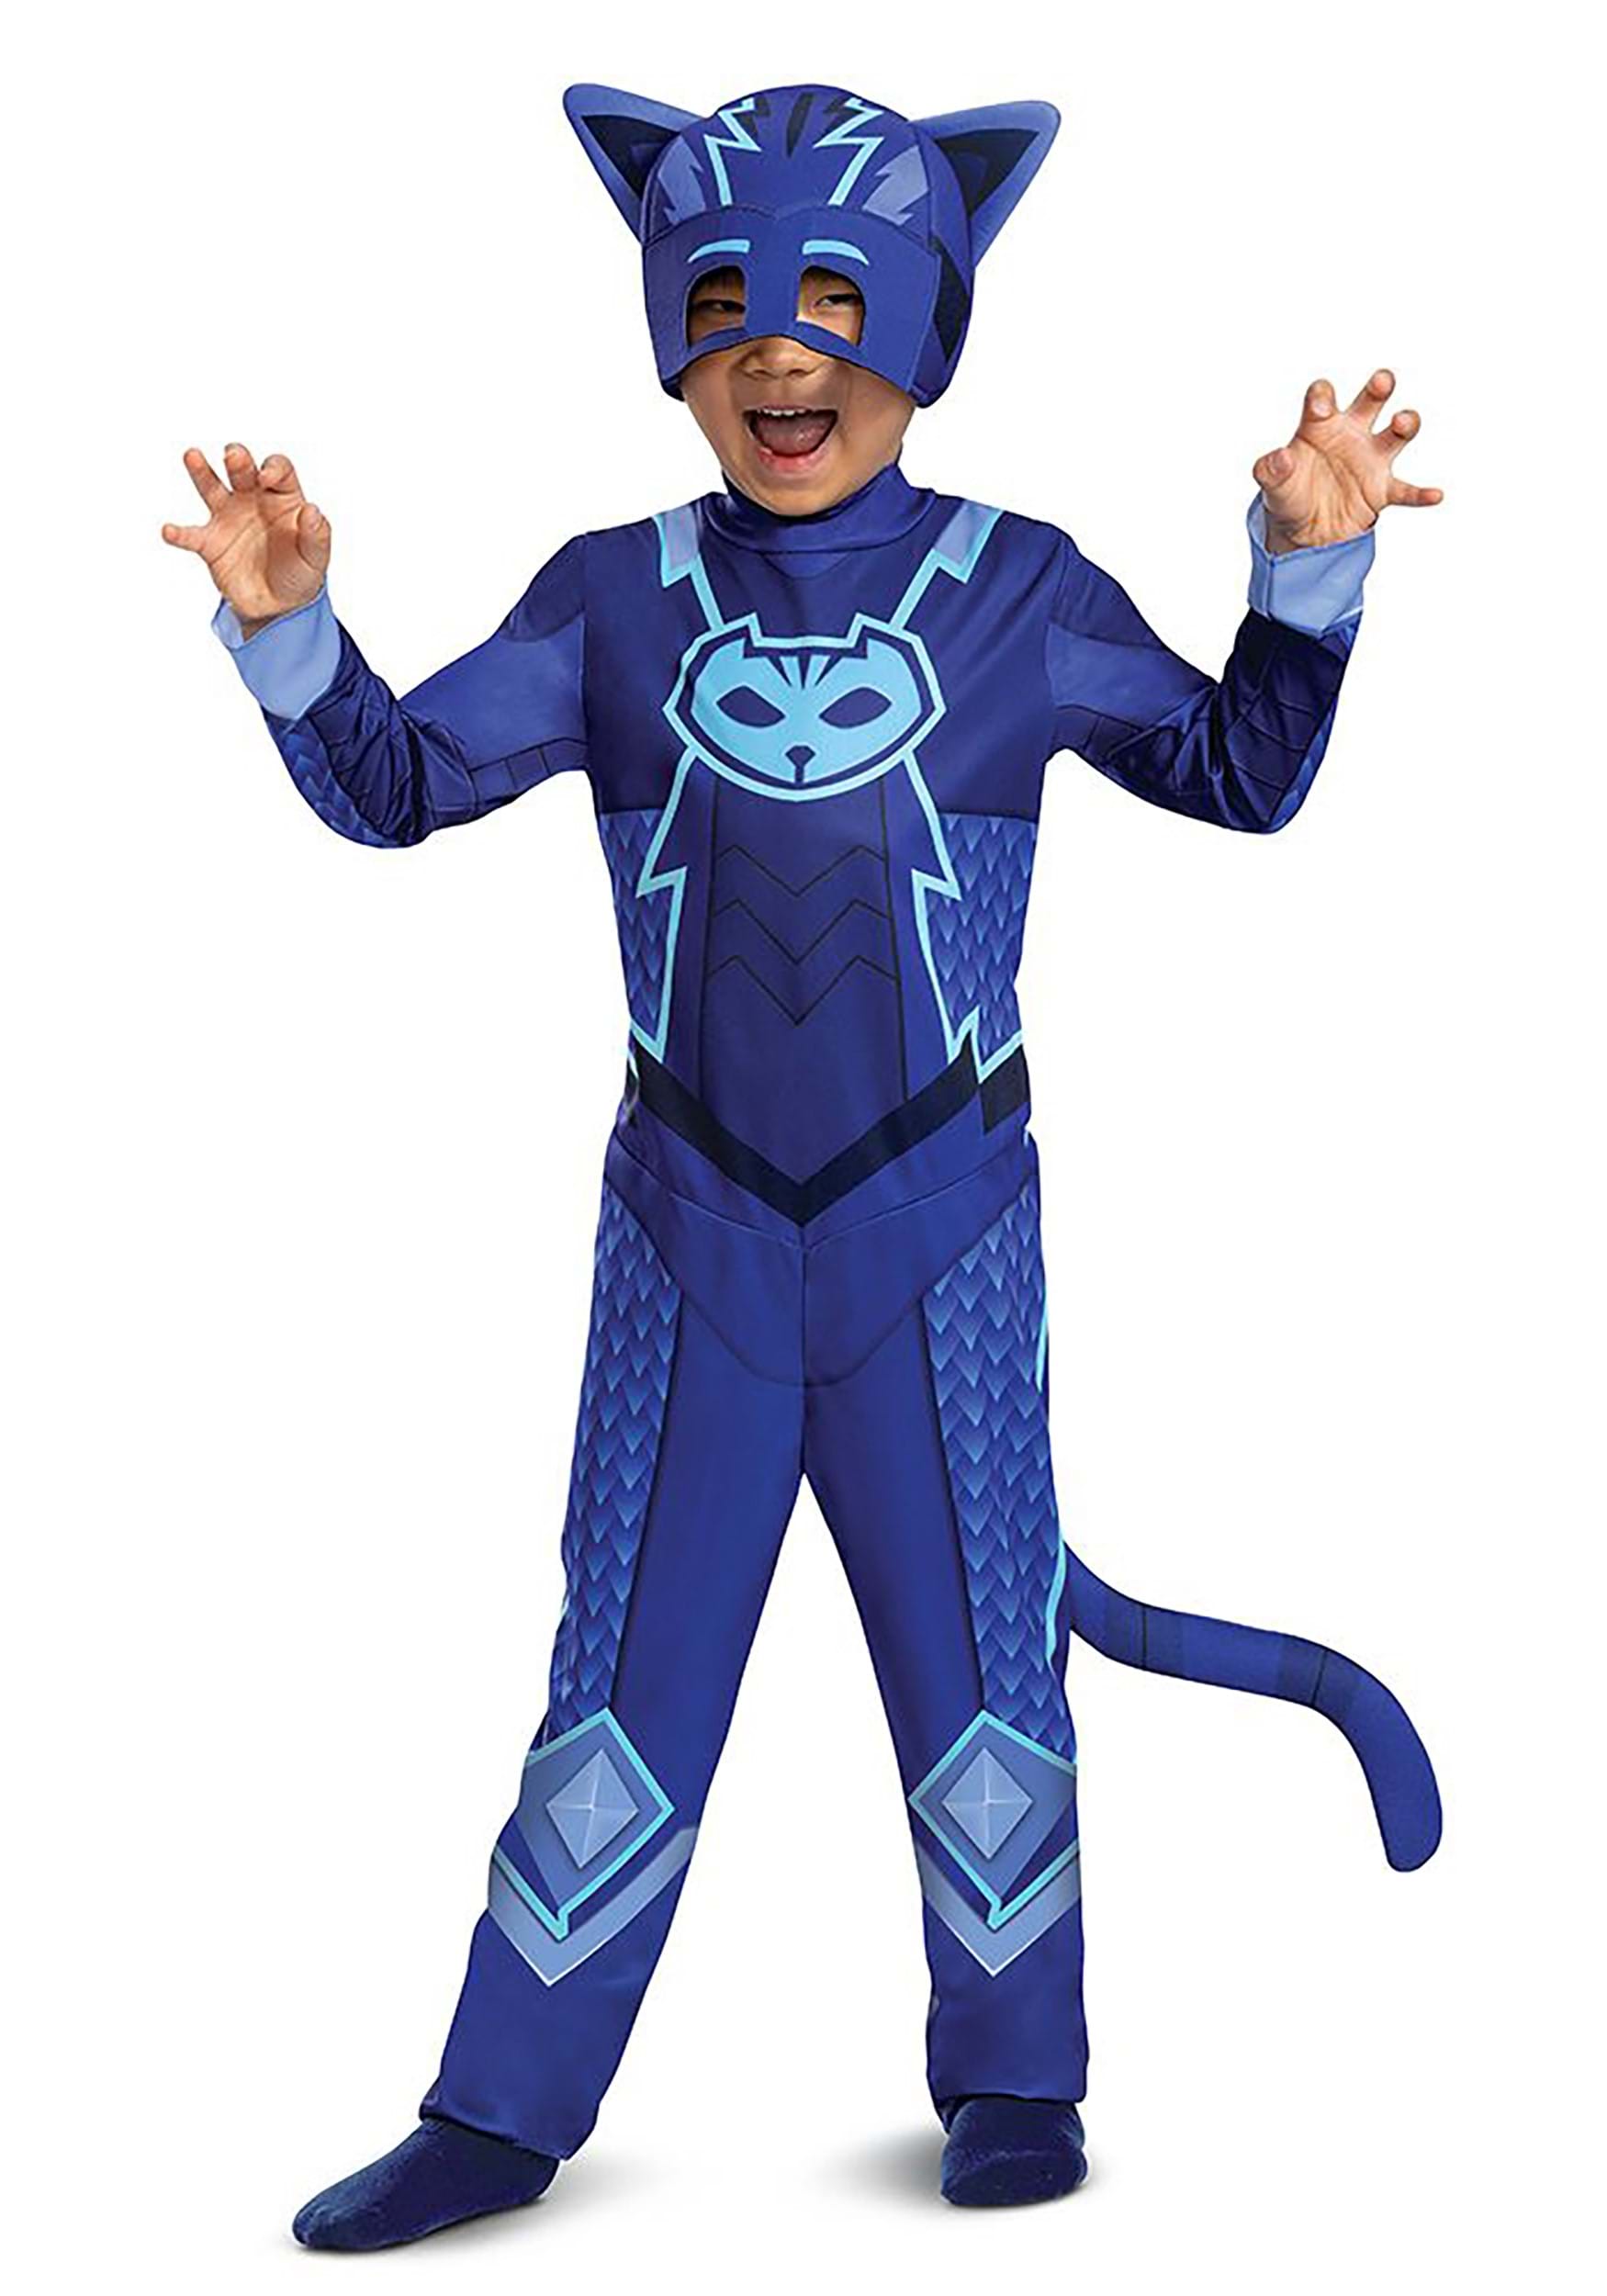 Photos - Fancy Dress PJ Masks Disguise  Catboy Megasuit Classic Toddler Costume Blue DI124259 